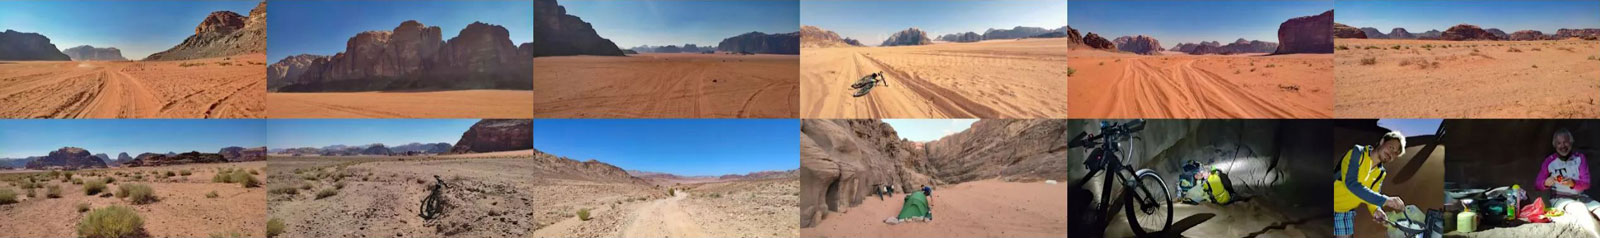 Wüstenbilder vom Jordan-Bike-Trail